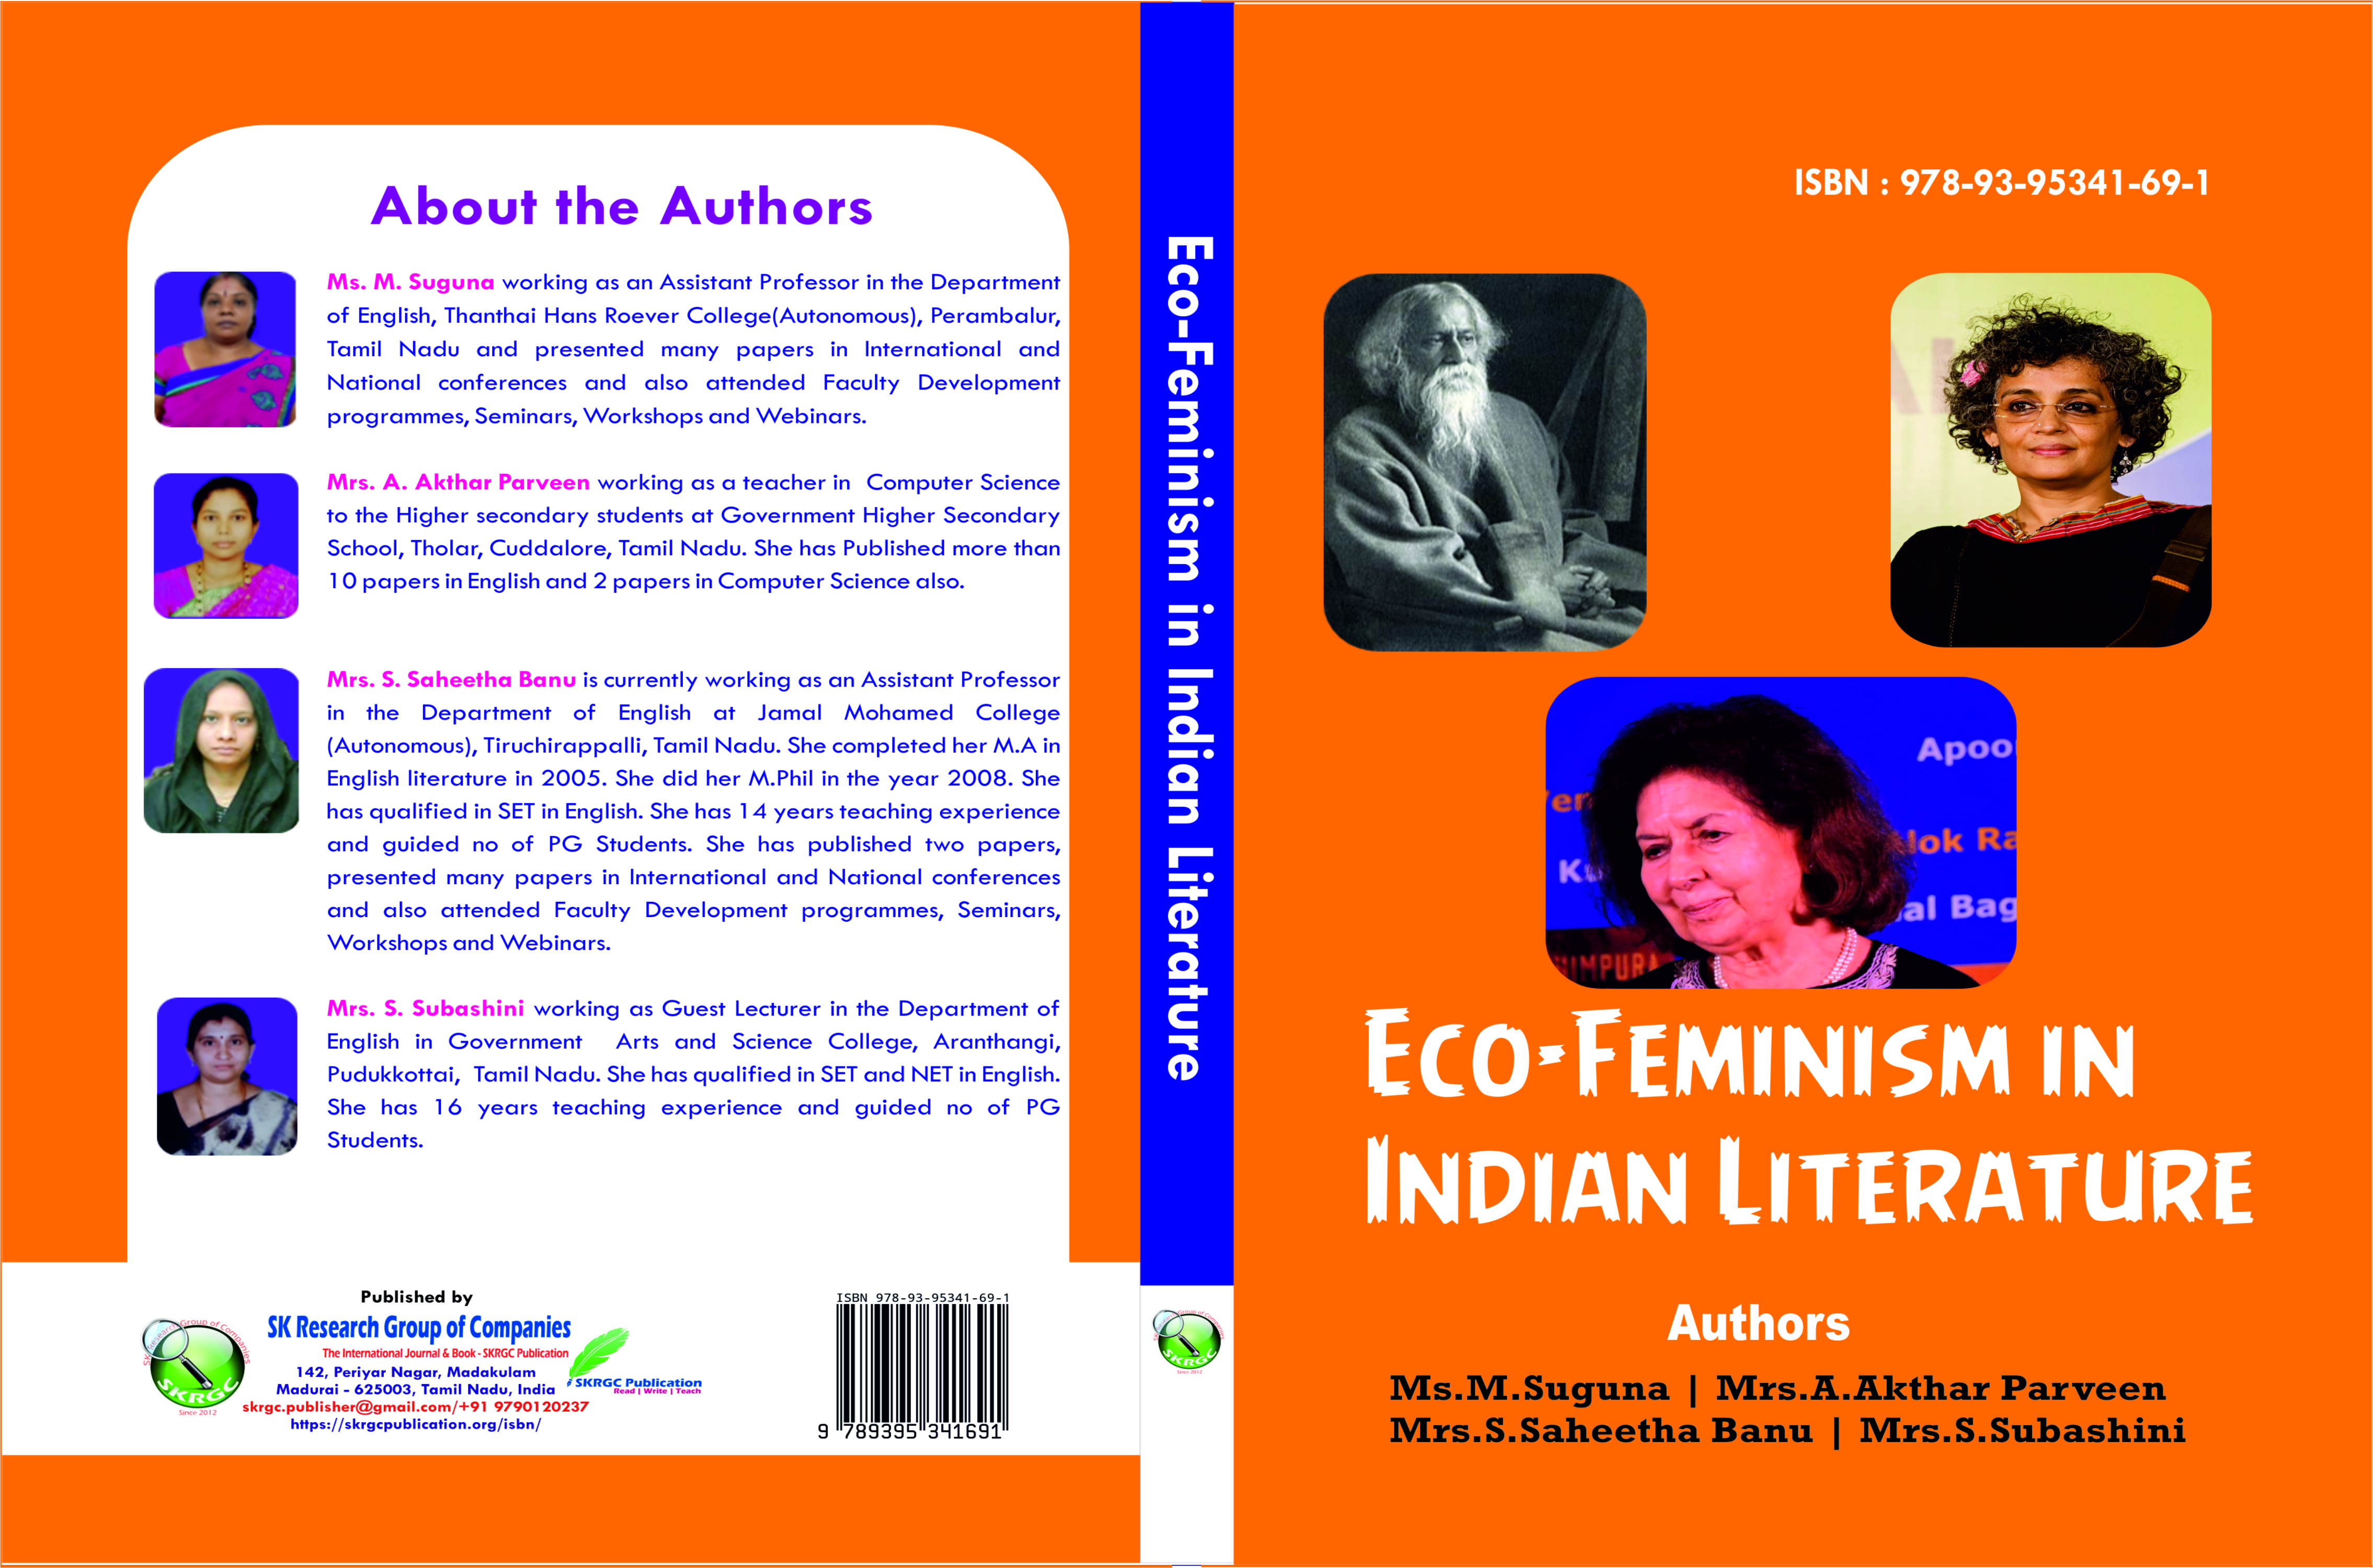 Eco-Feminism in Indian Literature